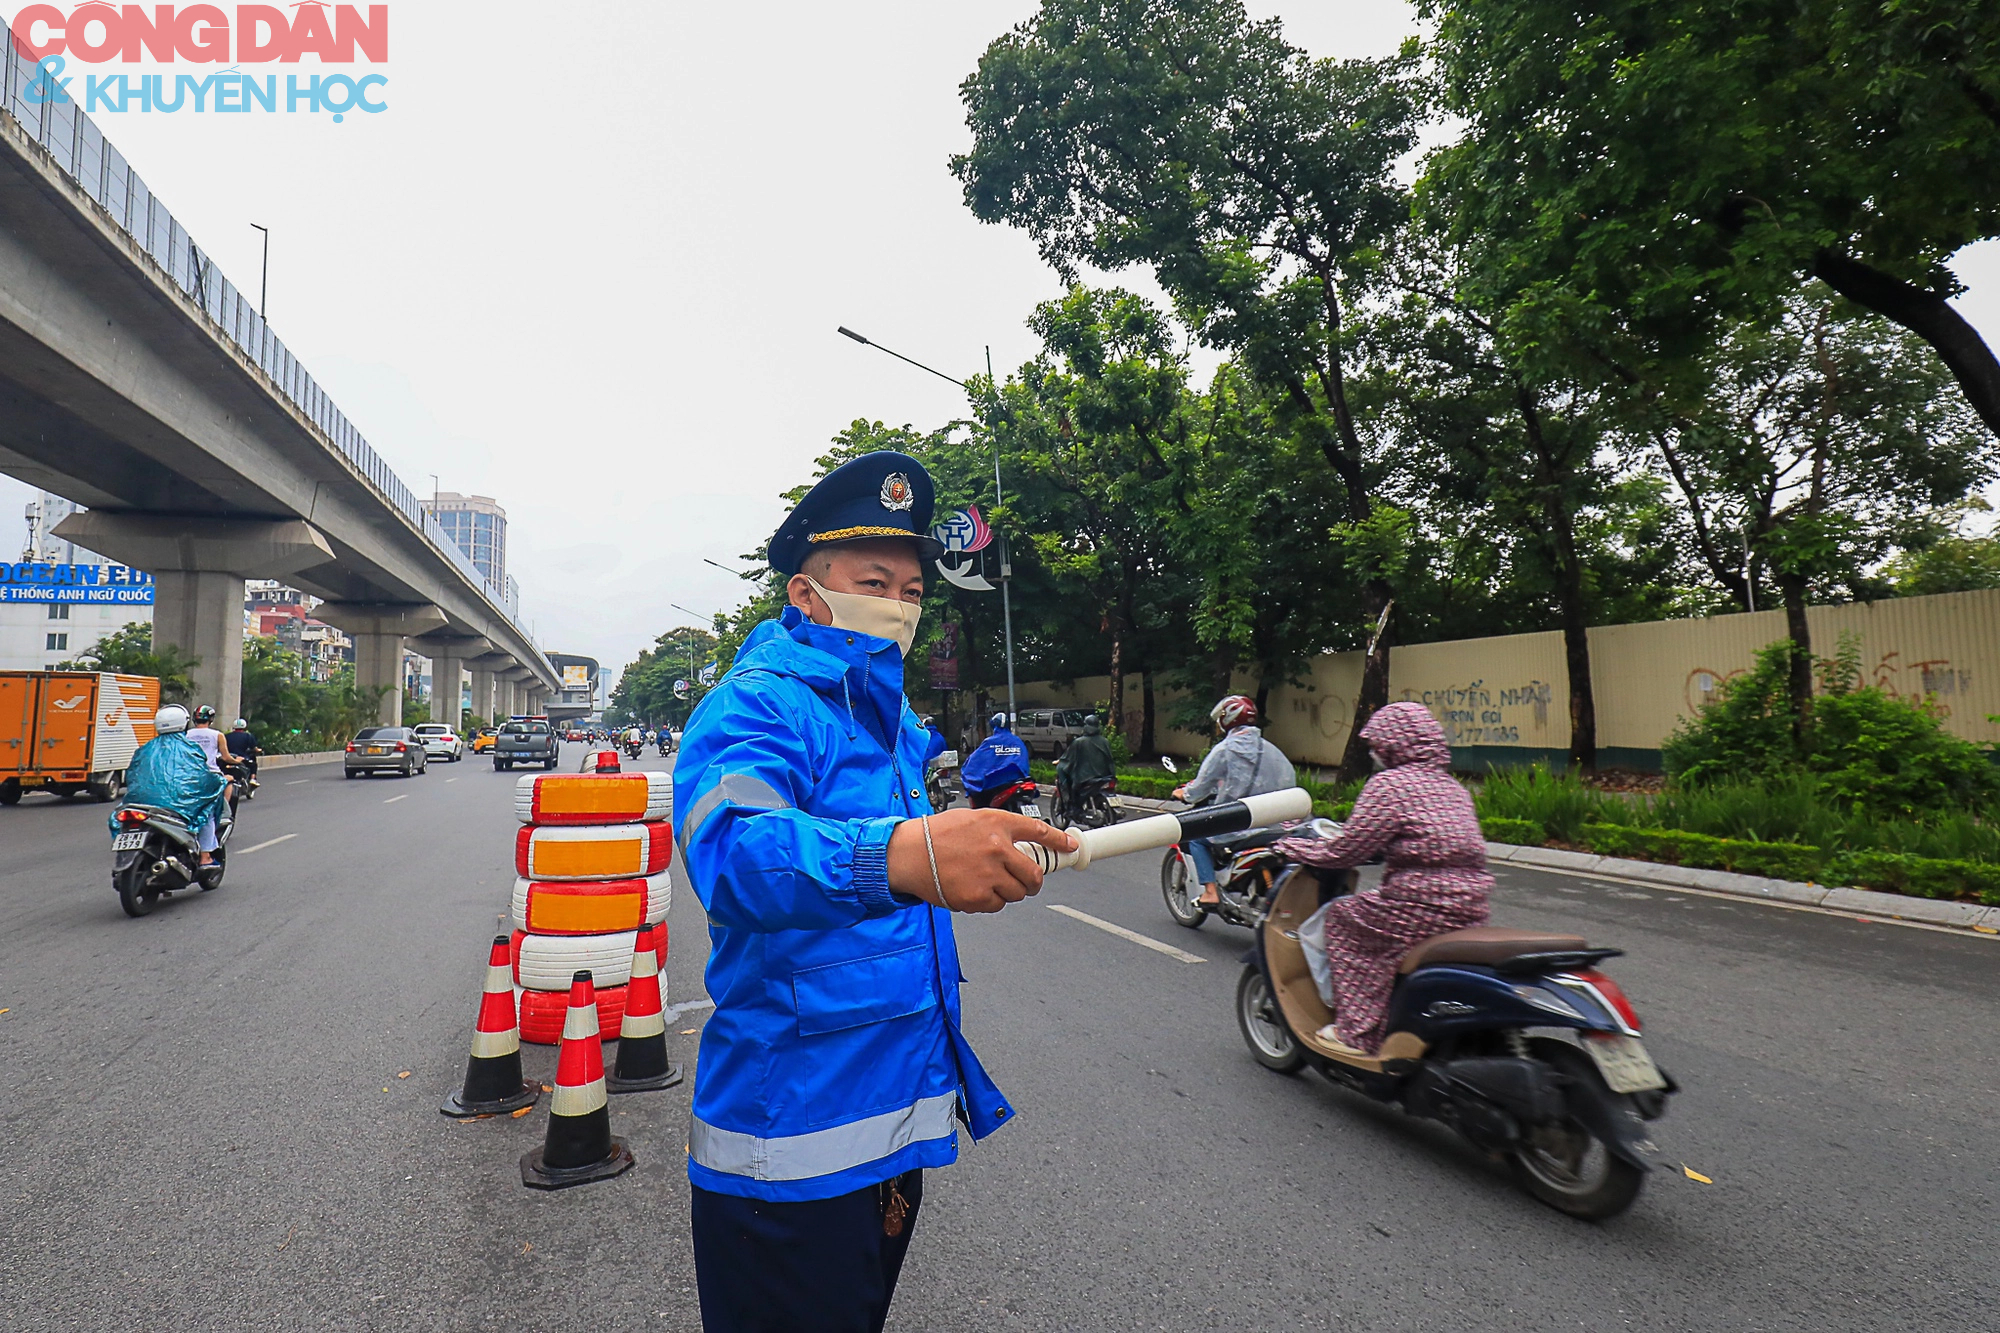 Hà Nội: Giao thông trên đường Nguyễn Trãi lộn xộn sau khi phân làn - Ảnh 6.